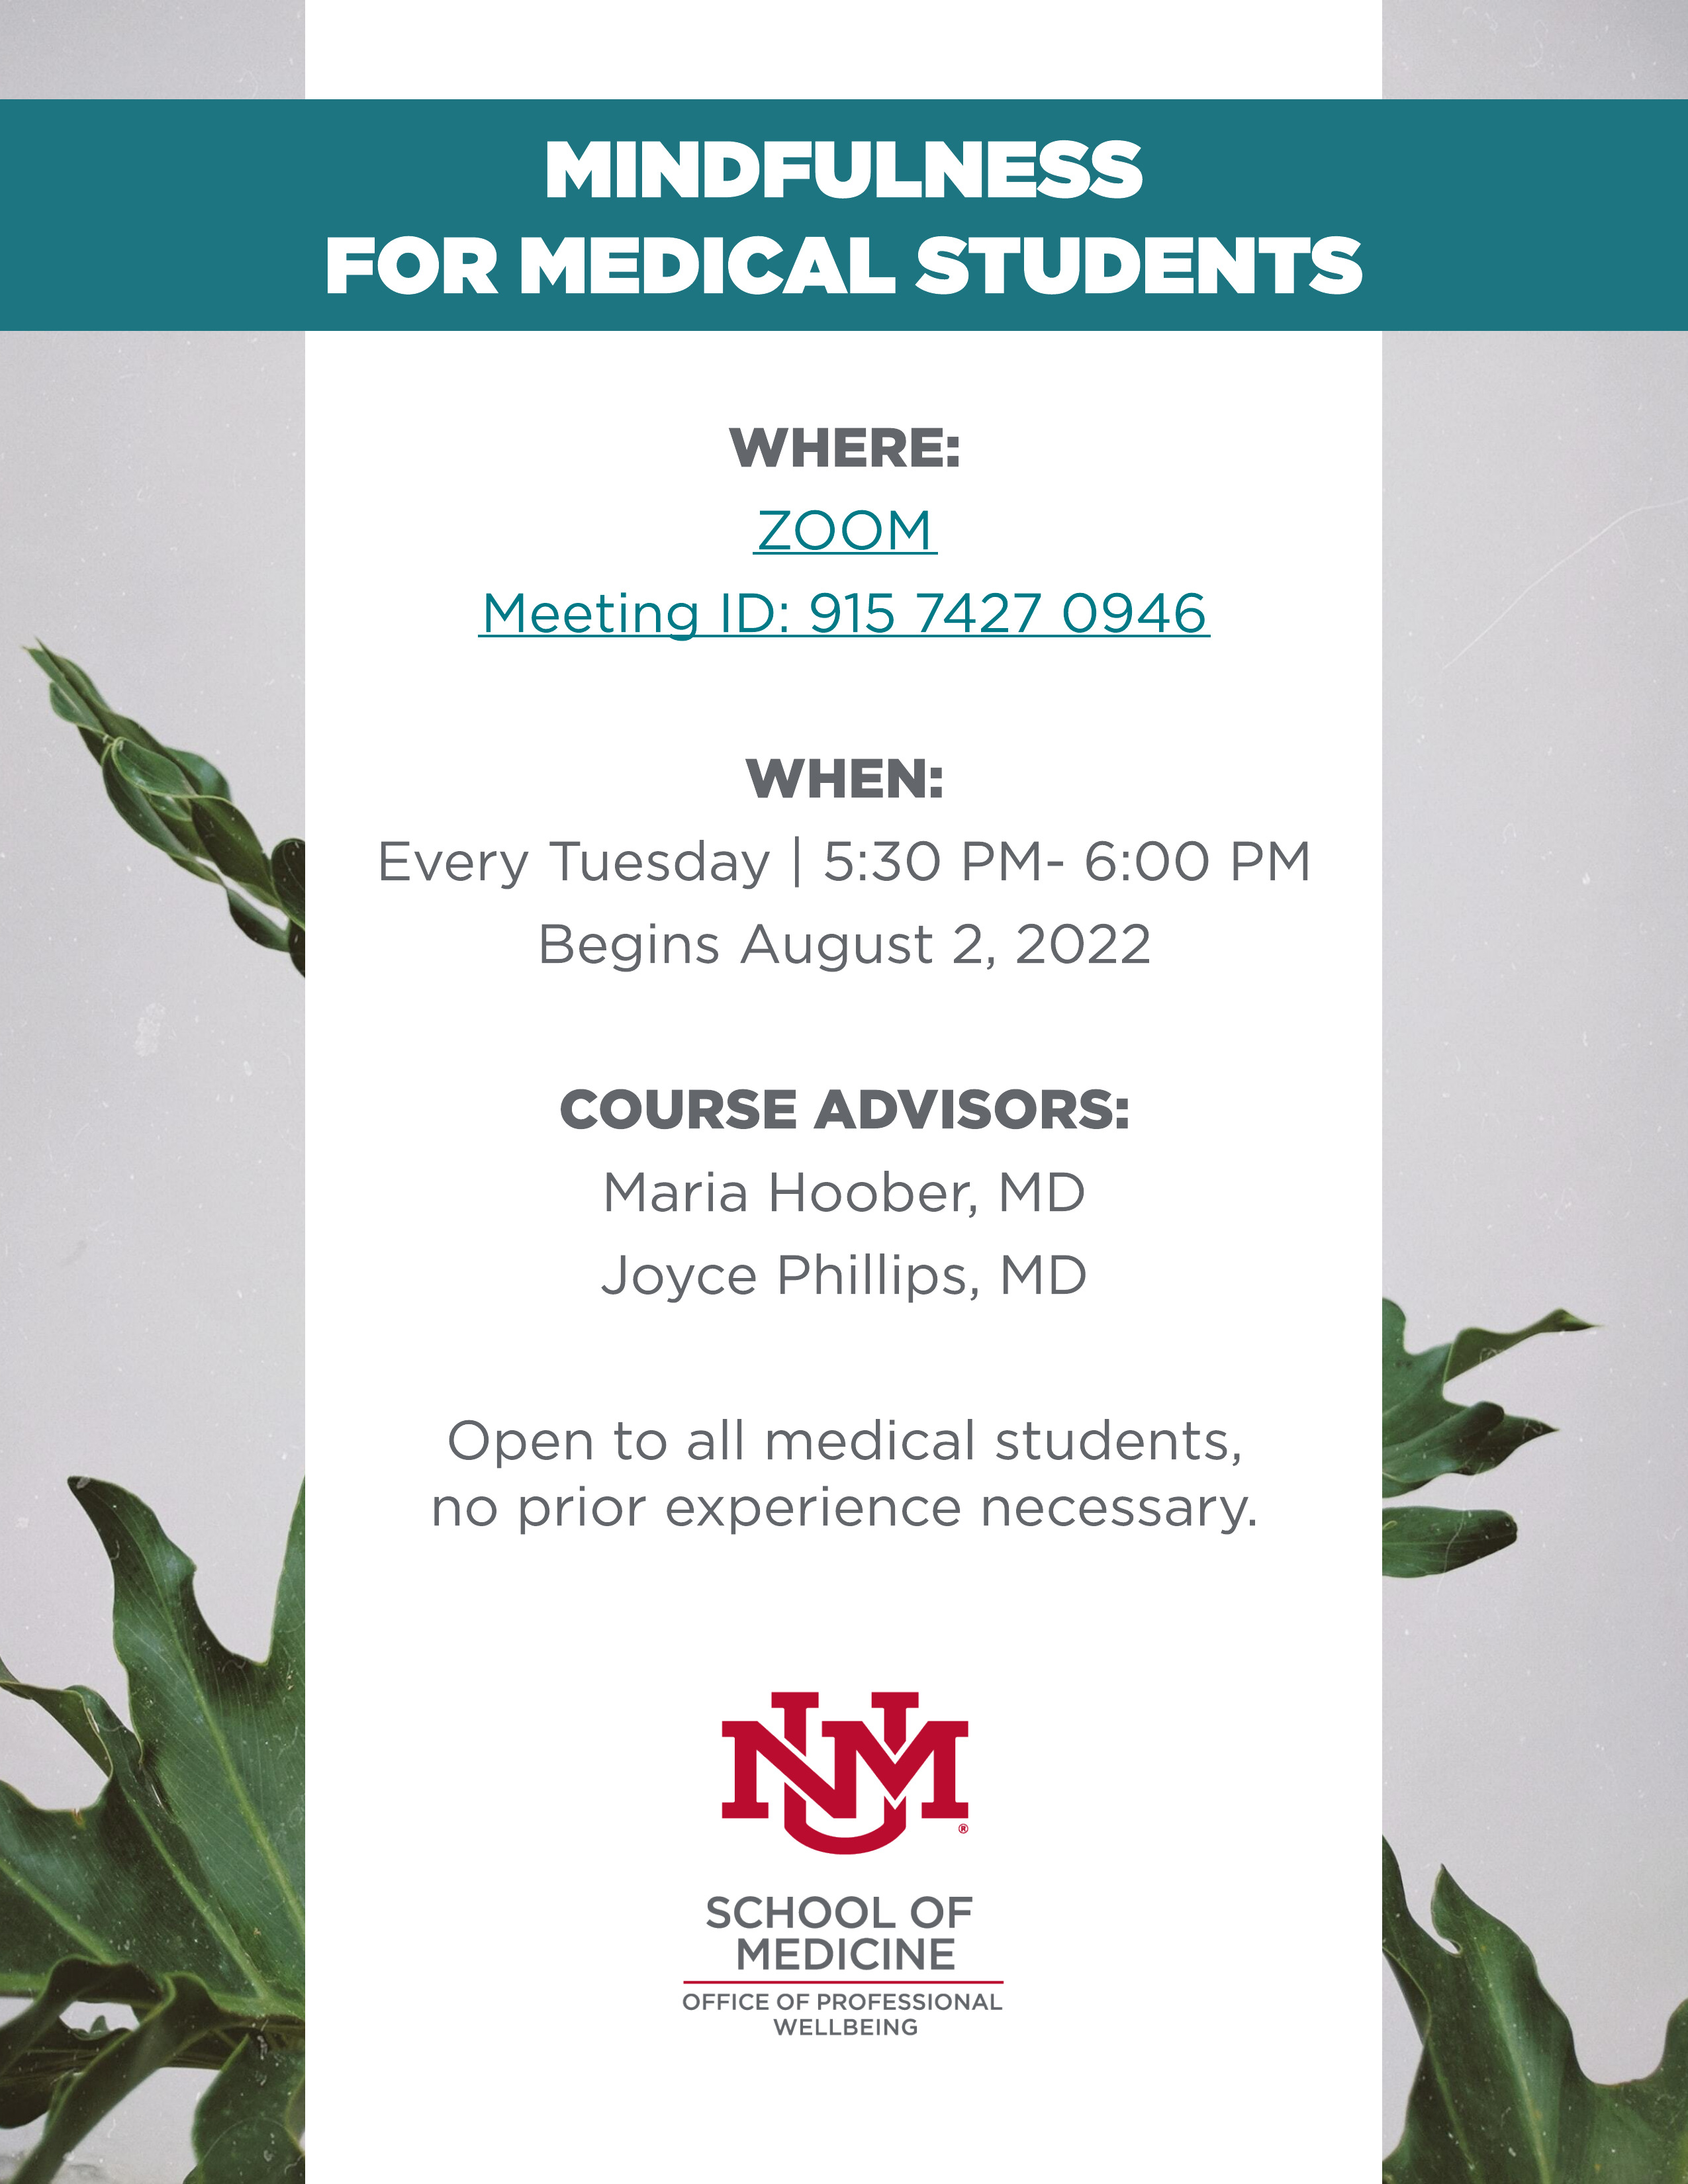 मेडिकल छात्रों के लिए माइंडफुलनेस - मंगलवार शाम 5:30 बजे से शाम 6:00 बजे तक ज़ूम . पर